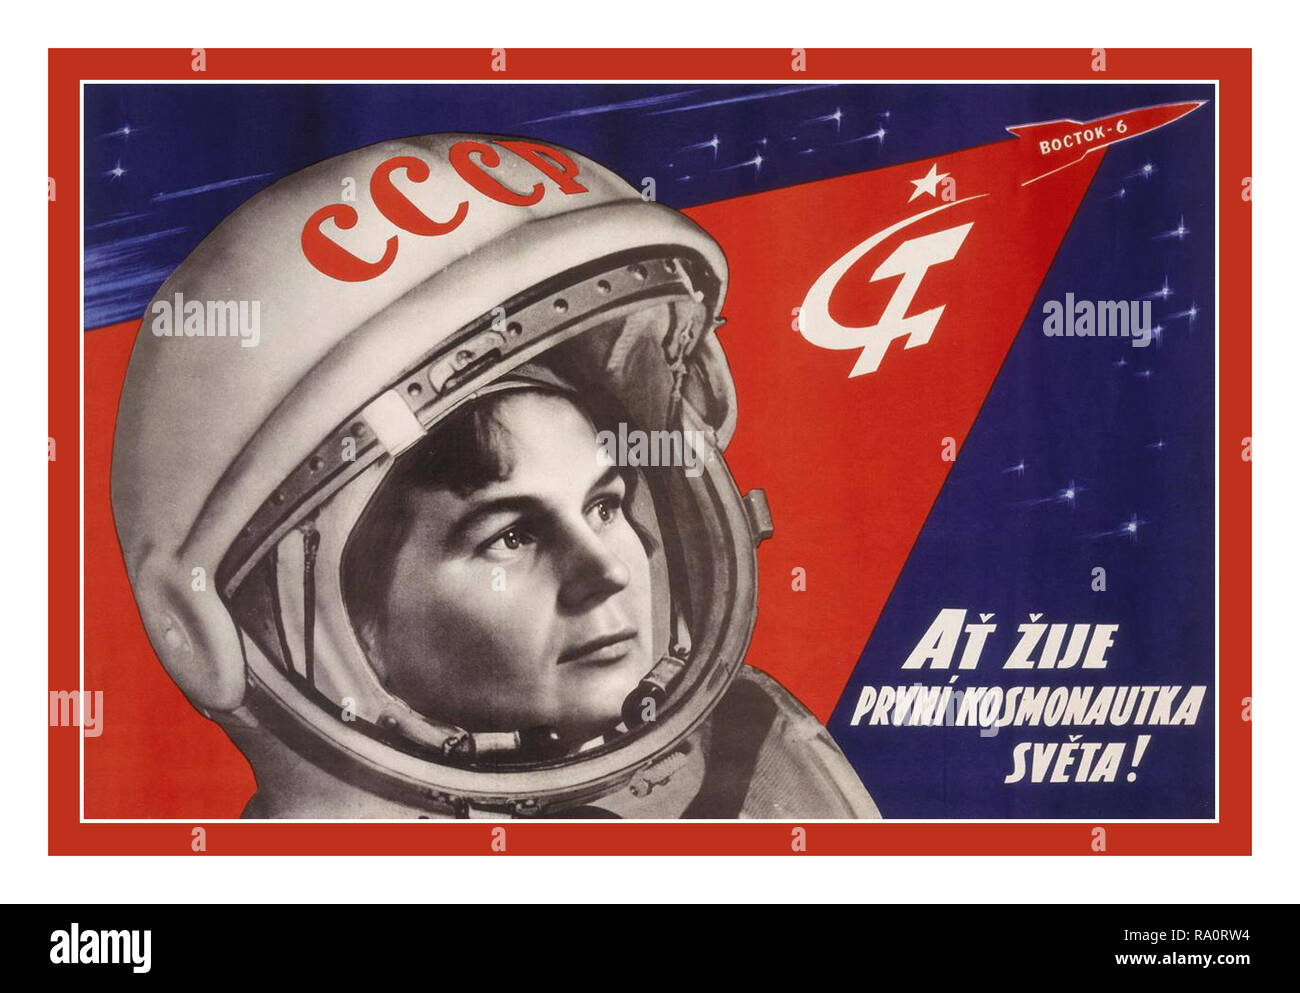 Jahrgang 1960 der russisch-sowjetischen UDSSR Space Race Propagandaplakat "Ehre die erste Kosmonautin!" Juni 16, 1963, im Alter von 26 Jahren, Valentina Tereschkowa wurde die erste Frau im Weltraum zu fliegen. Ihre drei-tägigen Mission war der 12. in der Geschichte der bemannten Raumfahrt, nach mehreren russischen Wostok und American Mercury Flüge. Ihr schleudersitz geschnallt, tereschkowa Ritt im 7,5 Fuß (2,3 Meter) Druckkabine von Wostok-6 in einem 3 Tag Space Mission. Stockfoto